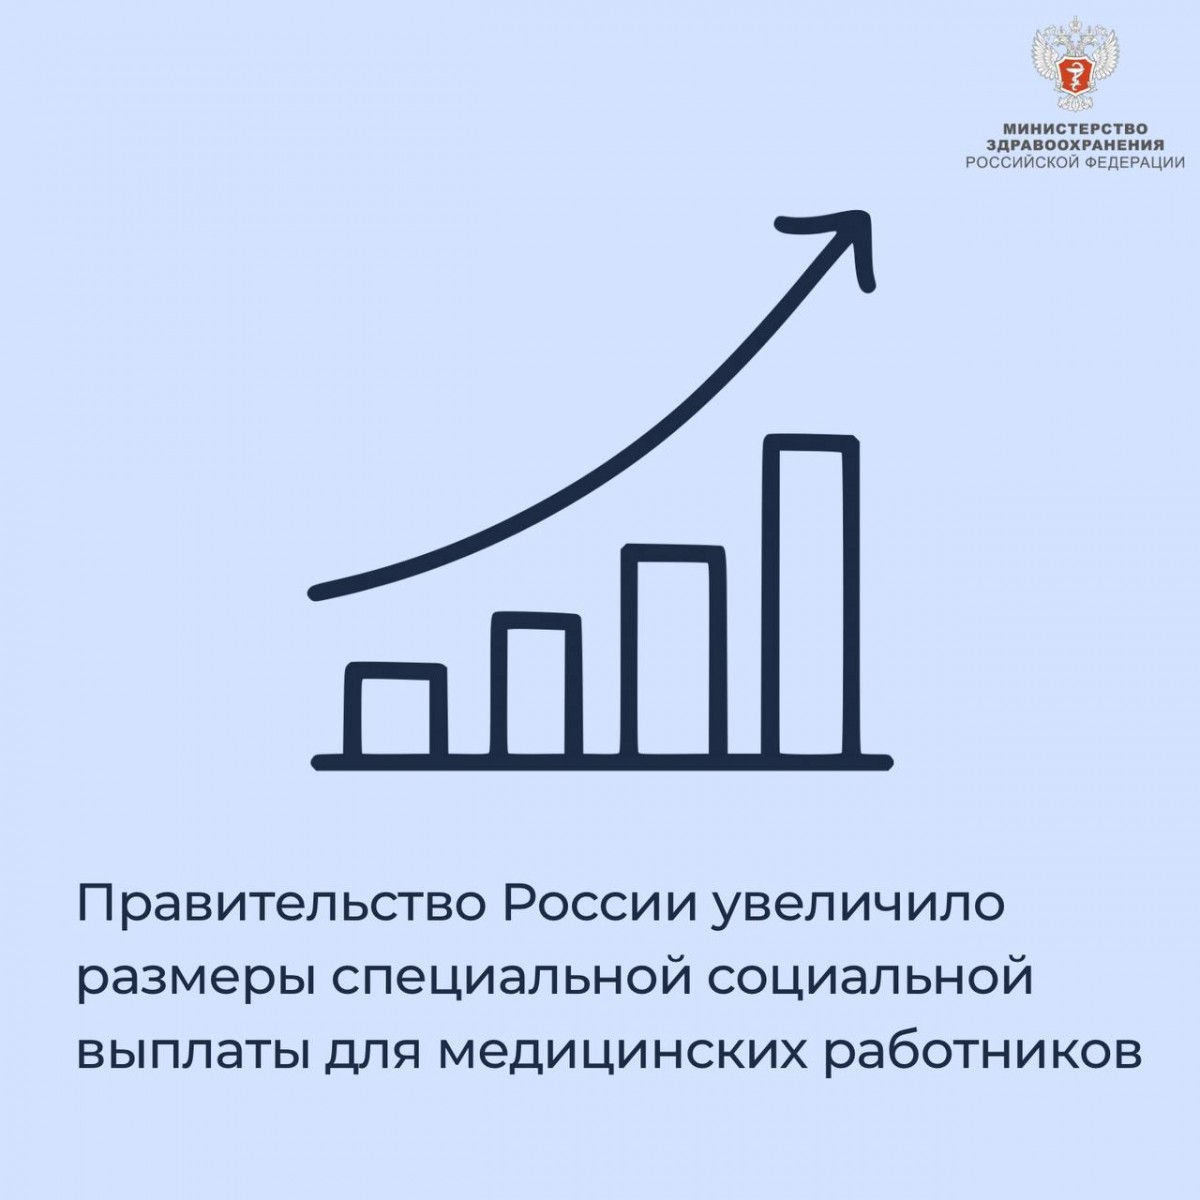 Правительство России увеличило размеры специальной социальной выплаты для медицинских работников